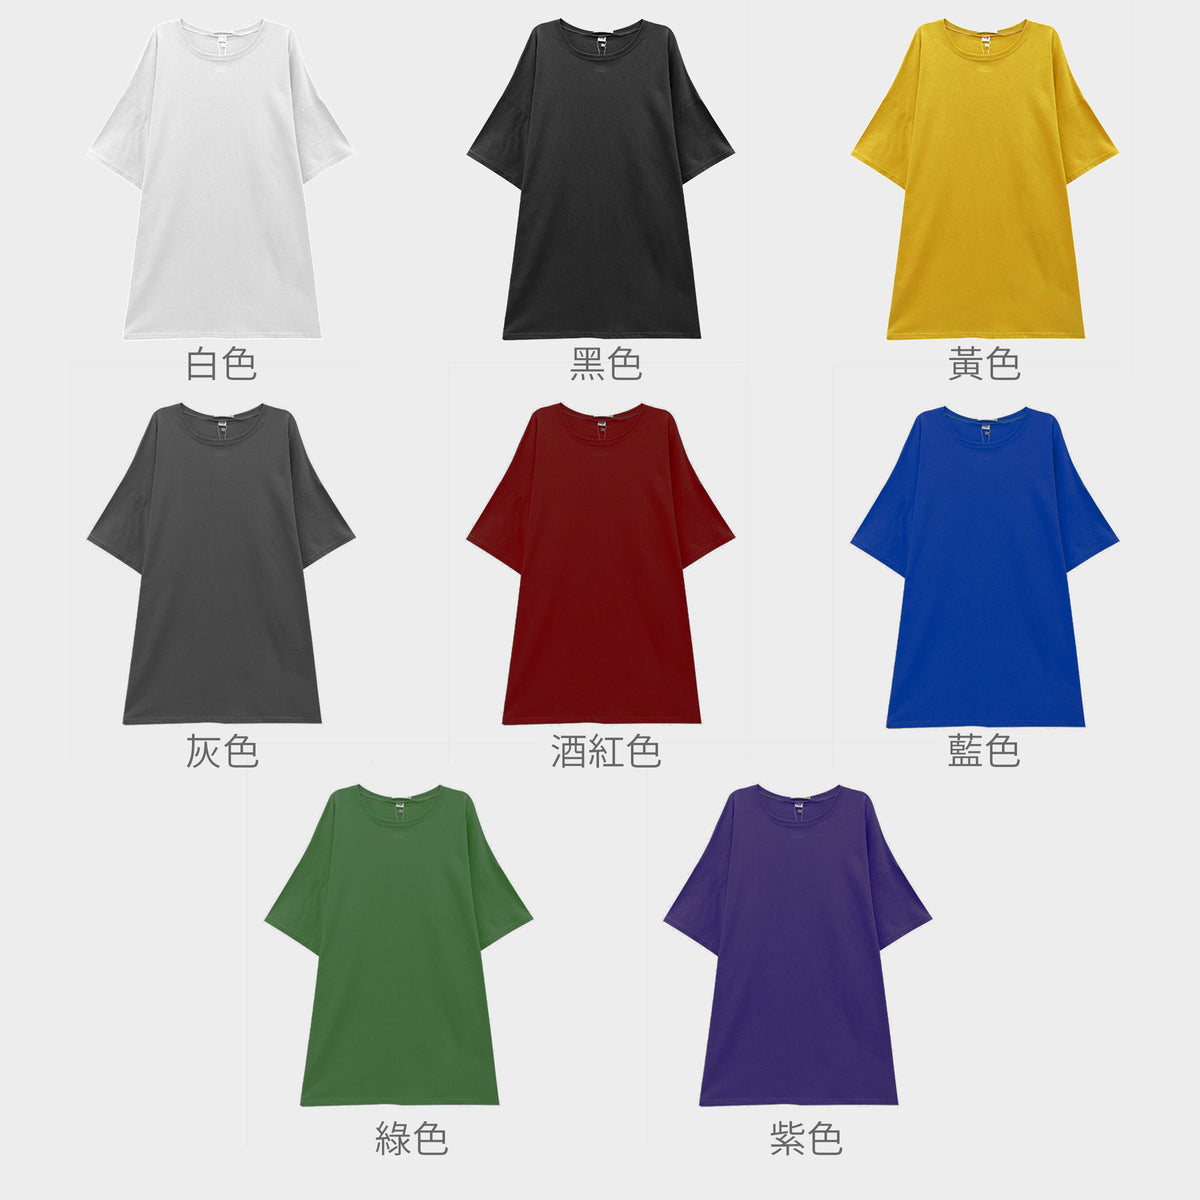 【女裝系列】訂製印花長T恤 客製化女裝休閒寬鬆裙